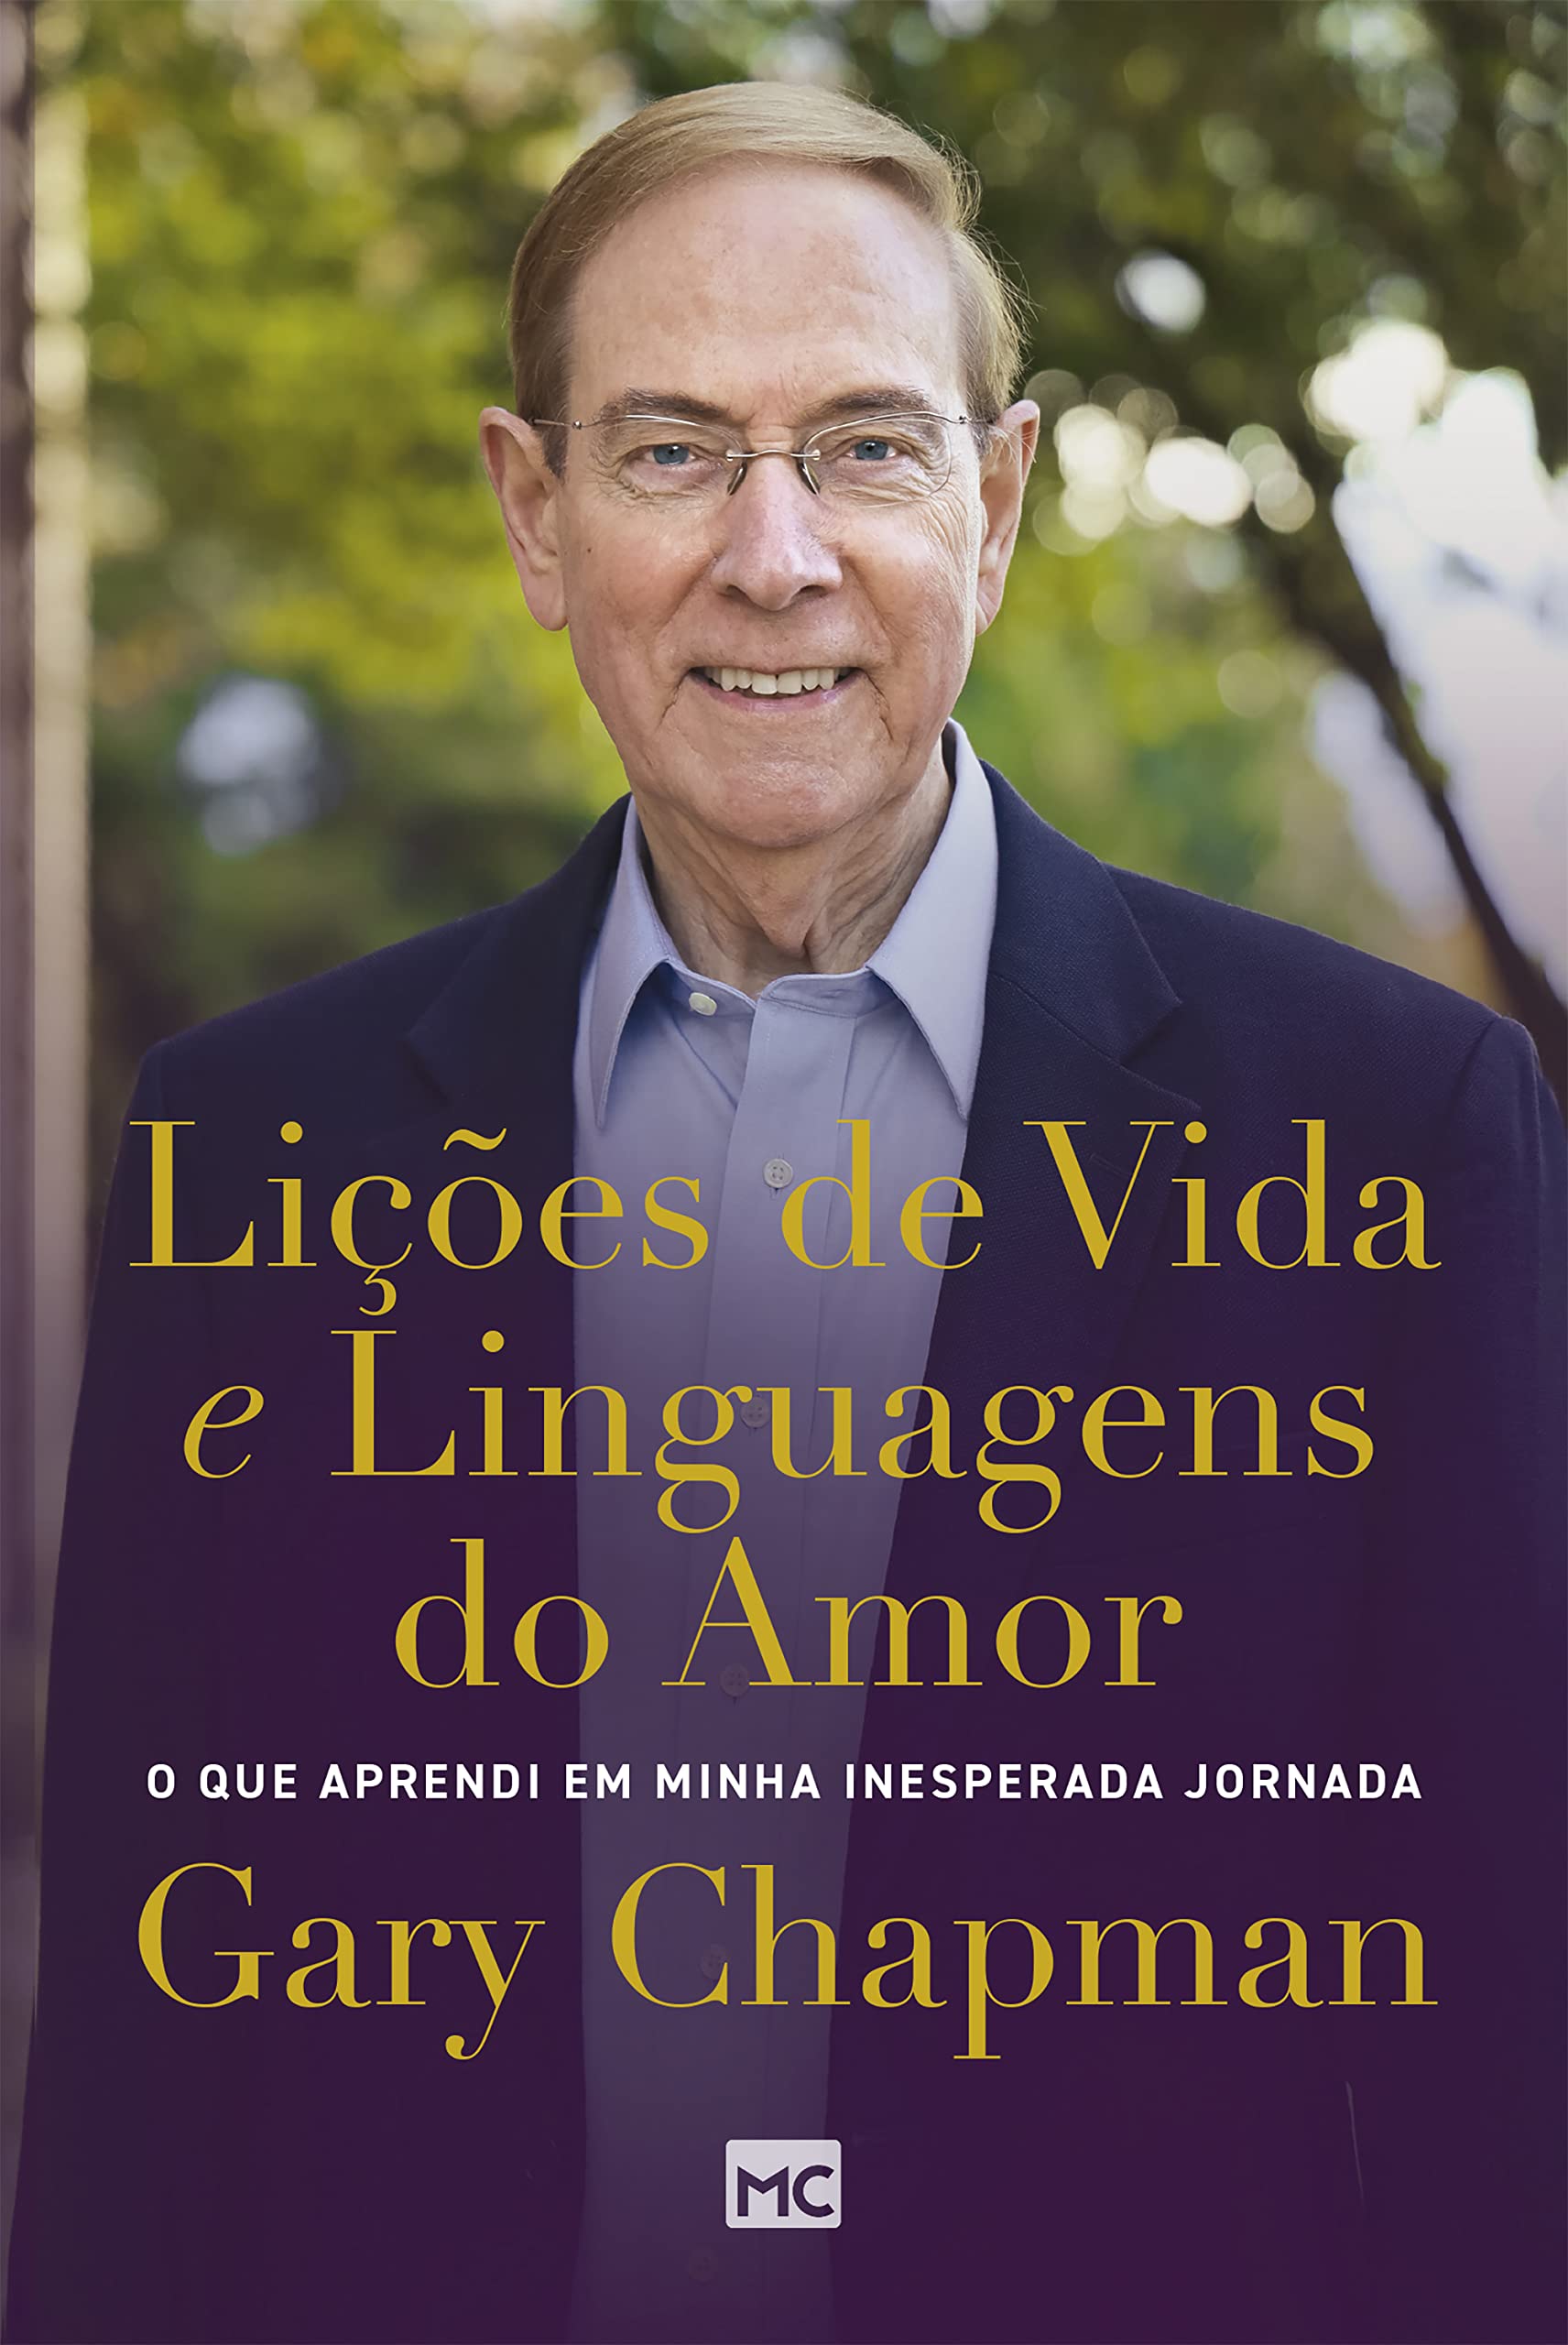 Lições de vida e linguagens do amor: O que aprendi em minha inesperada jornada (Portuguese Edition)